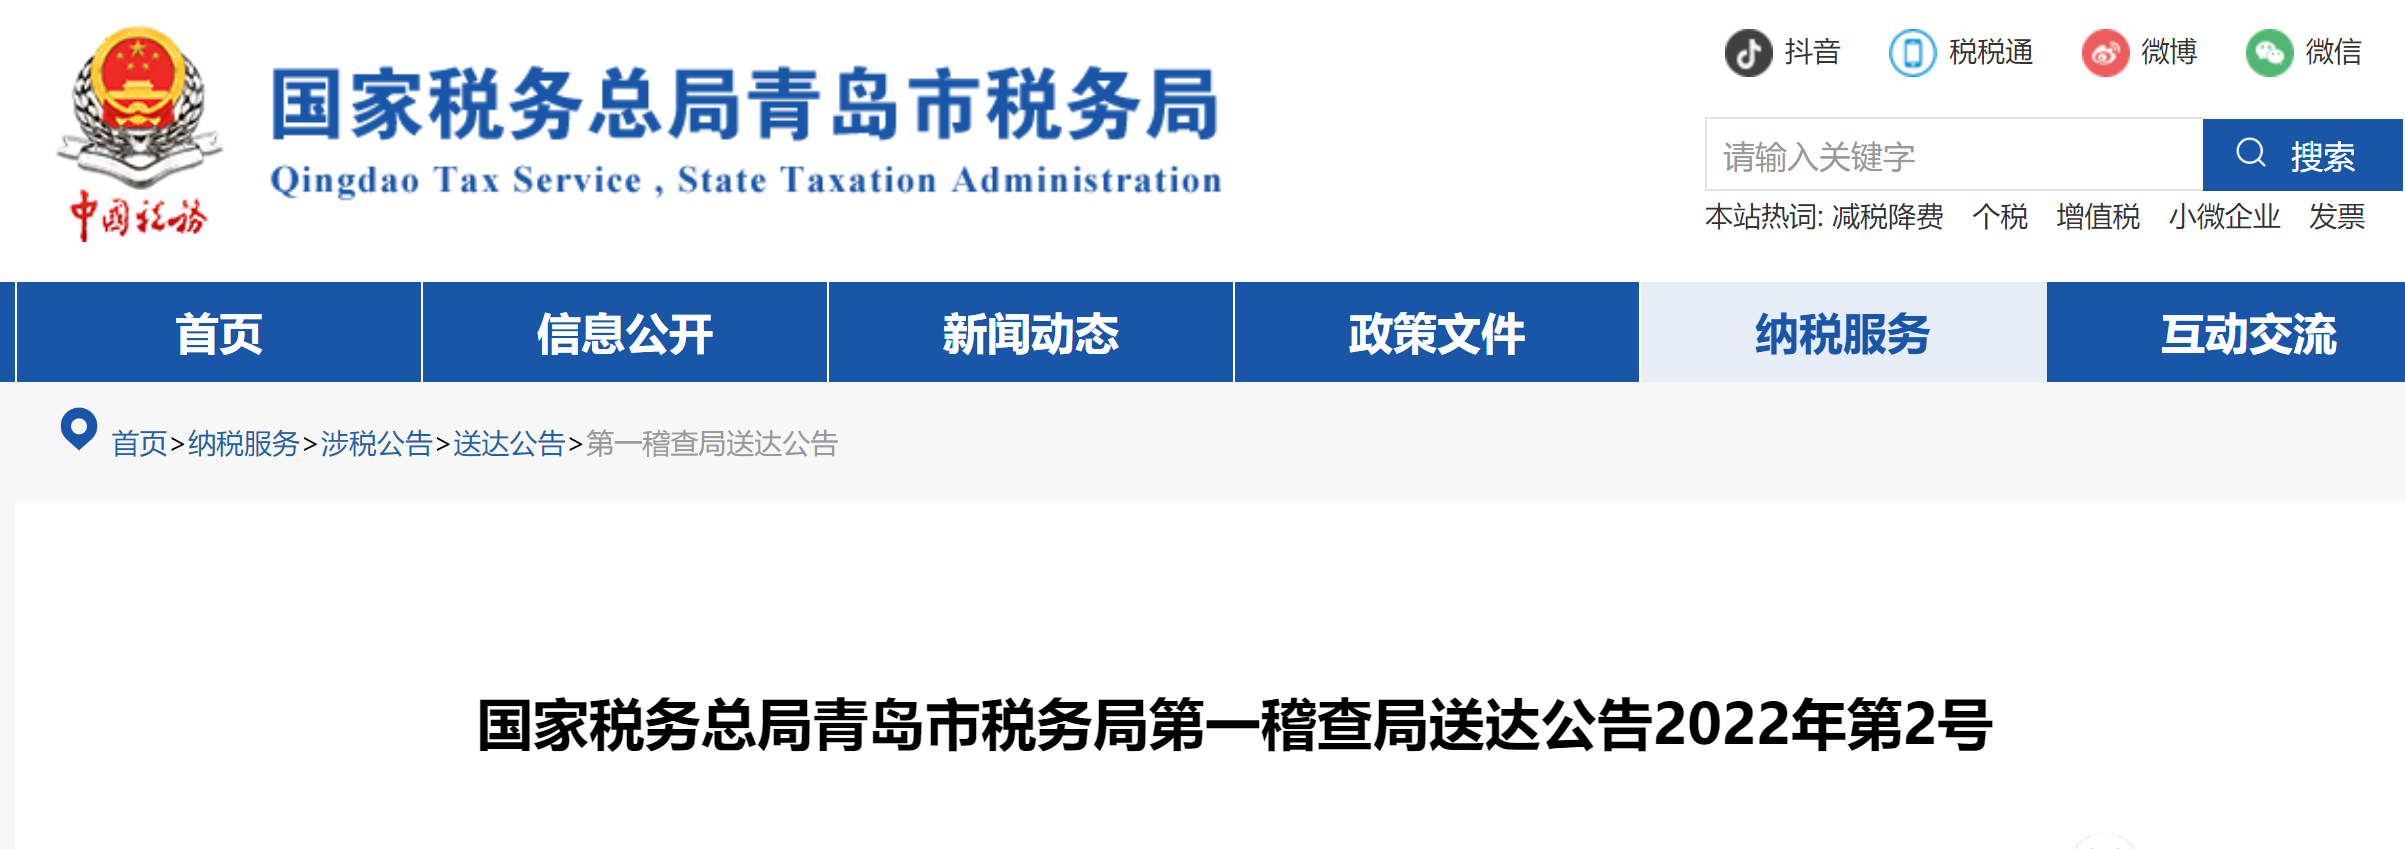 青岛税务局就某平台未代扣代缴个税问题进行处罚 罚金至239万